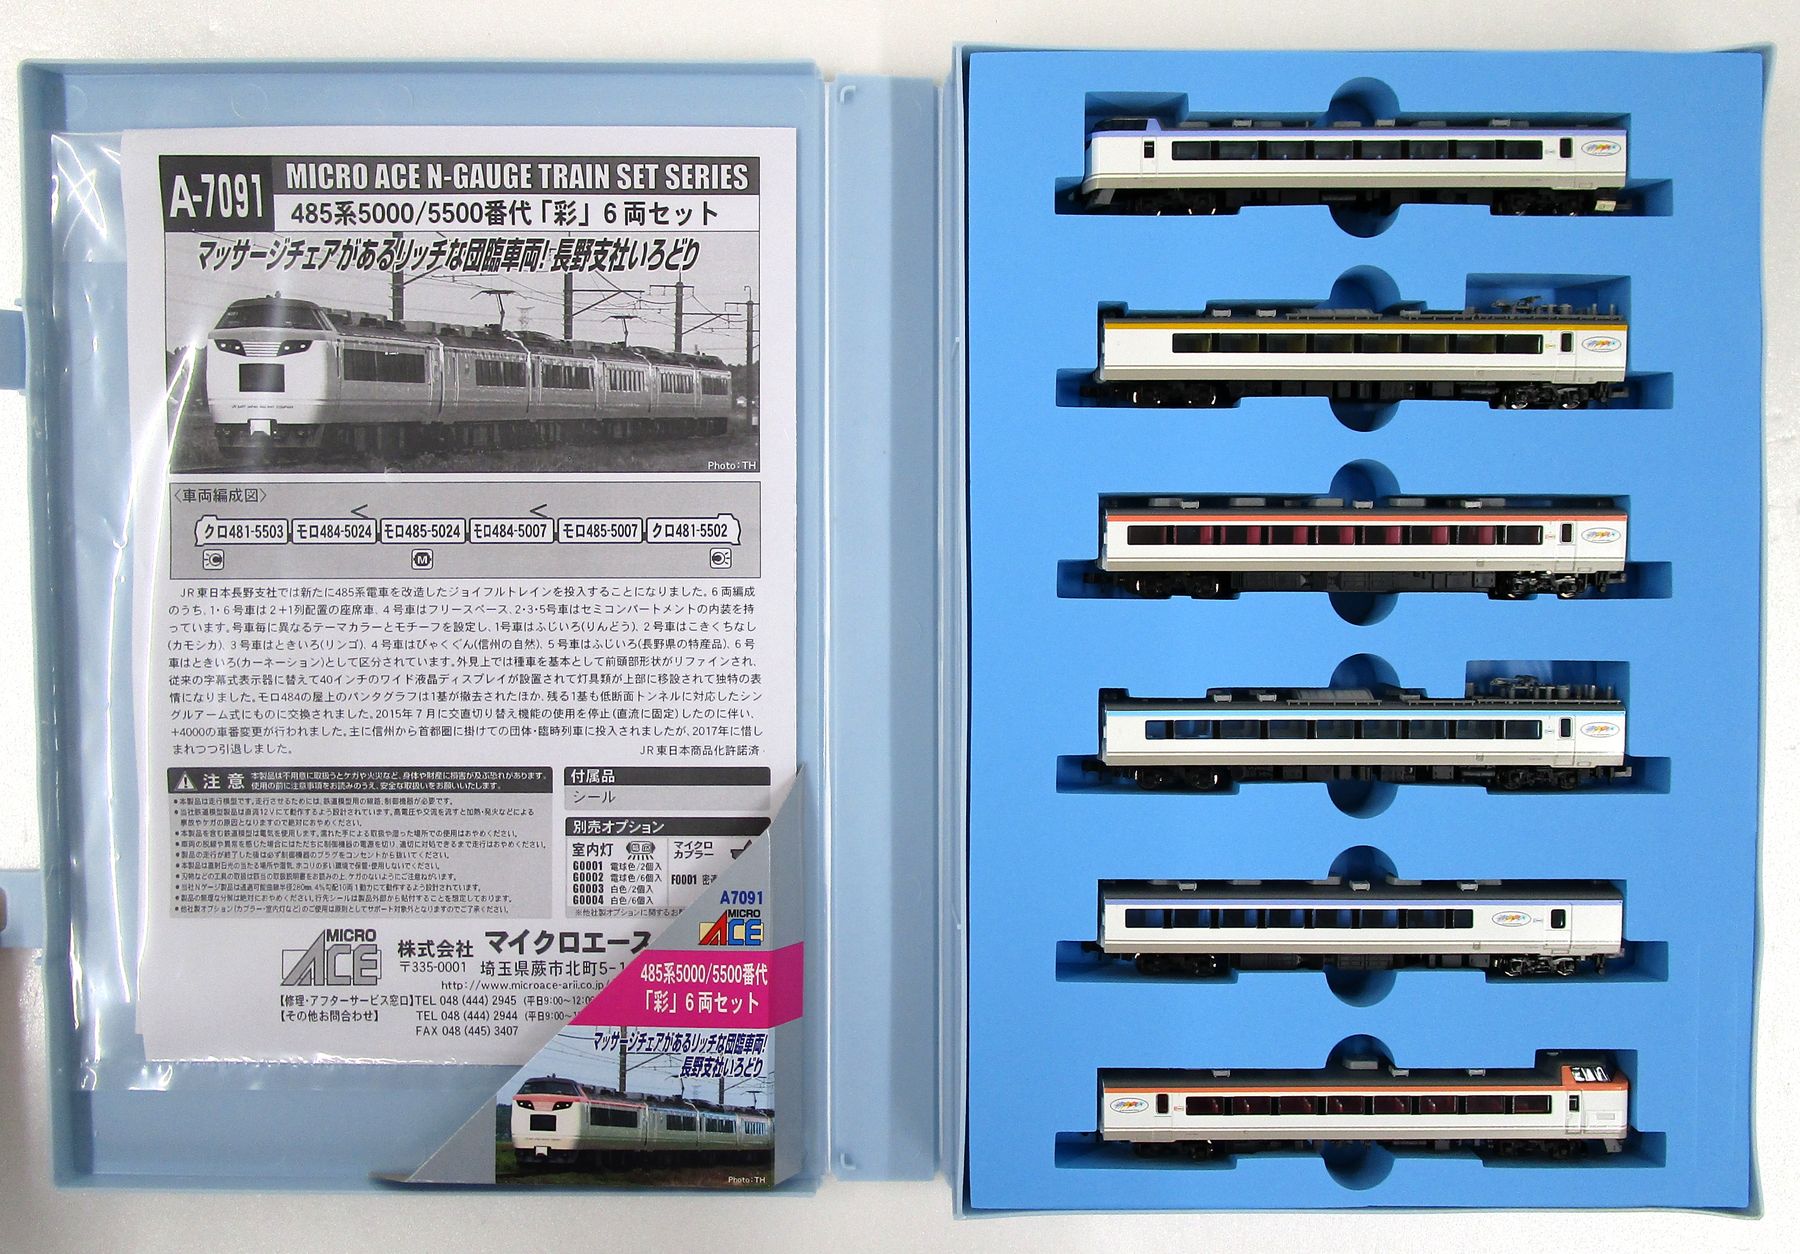 公式]鉄道模型(A7091485系5000/5500番代「彩」 6両セット)商品詳細 